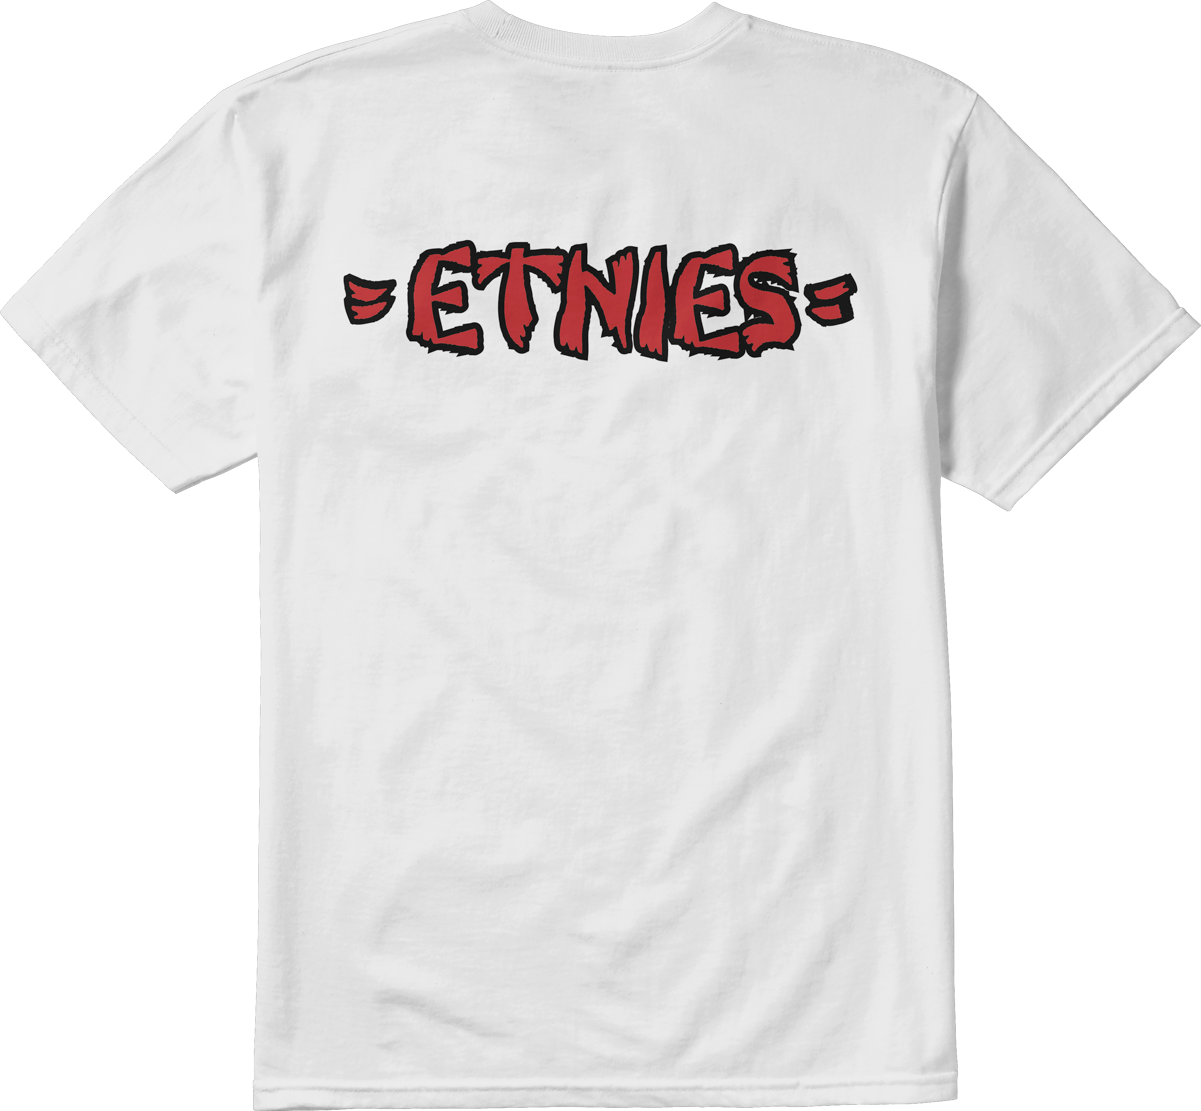 Etnies Mens Rebel E Tee White Red T-Shirt